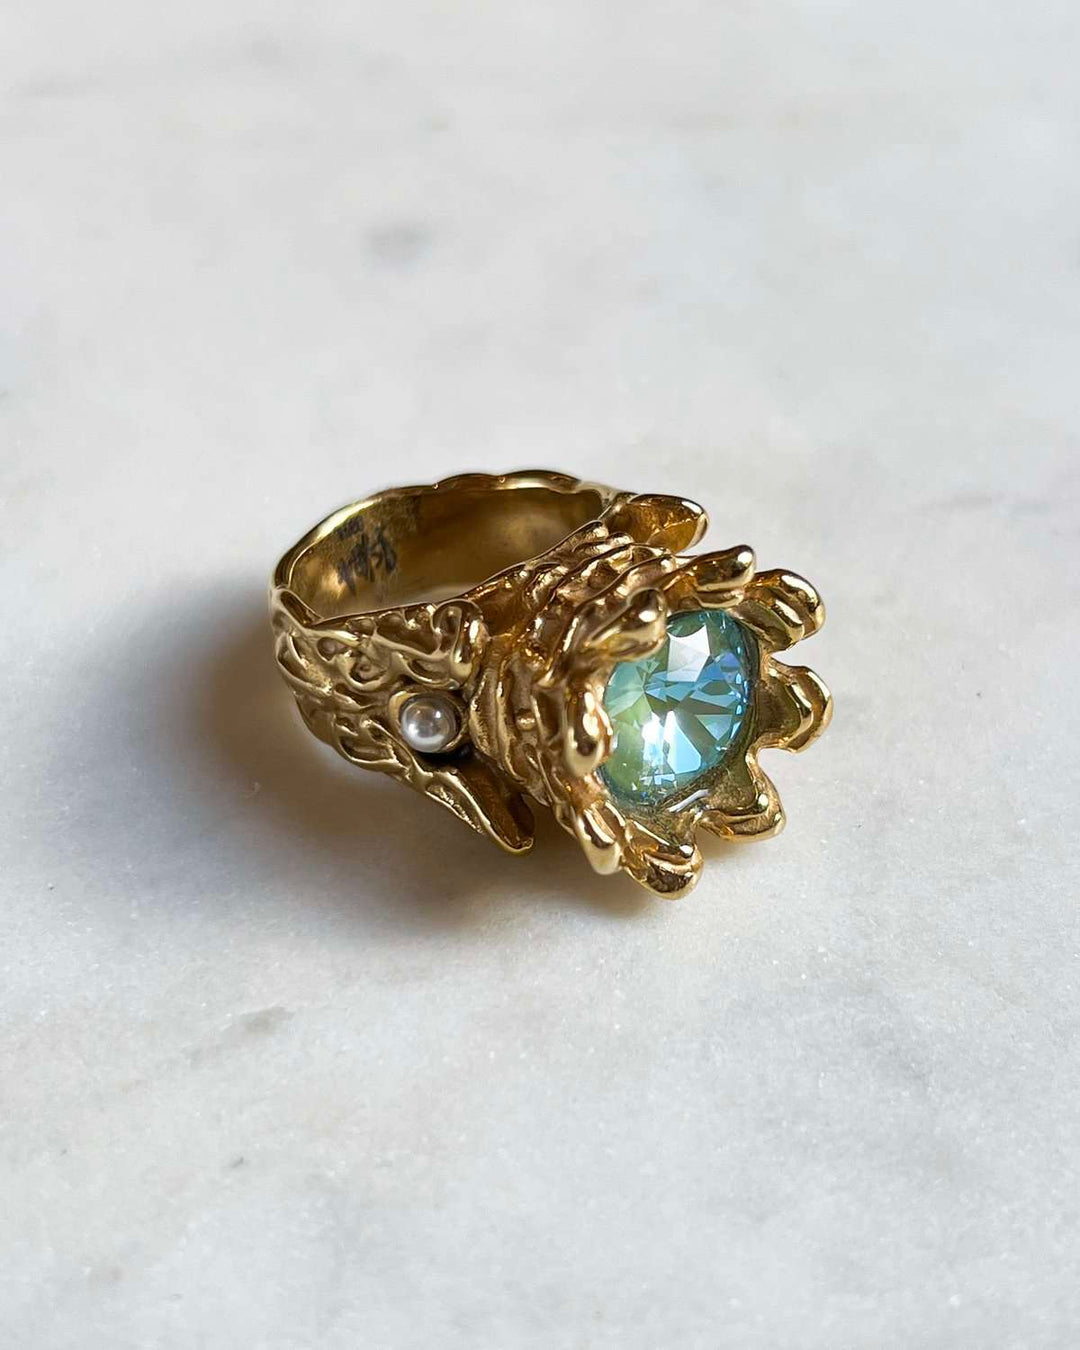 Crystal Royal Ring - Gold